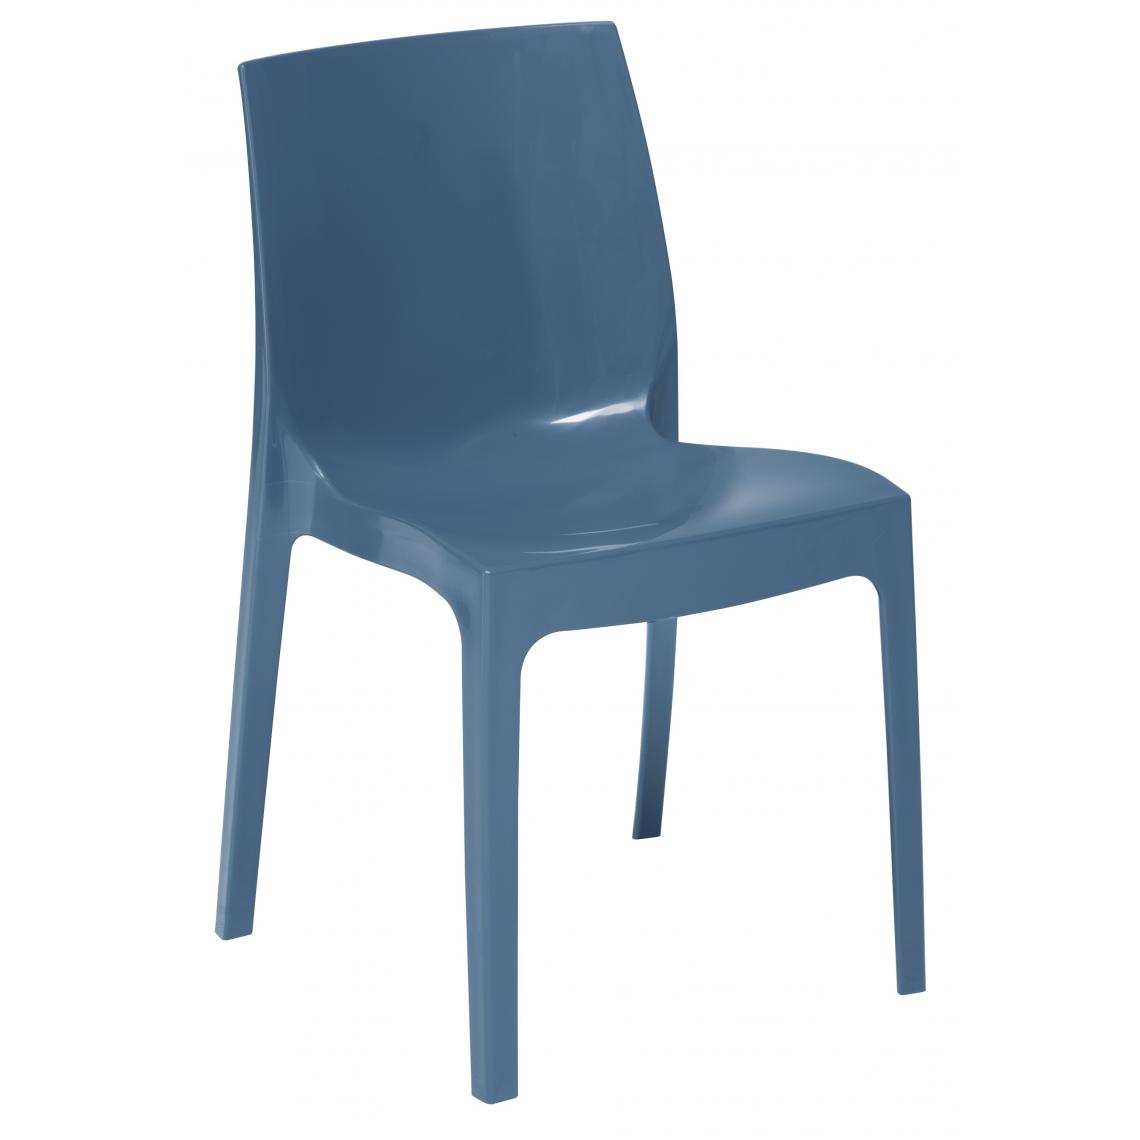 3S. x Home - Chaise Design Bleu Avio Laquée LADY - Chaises